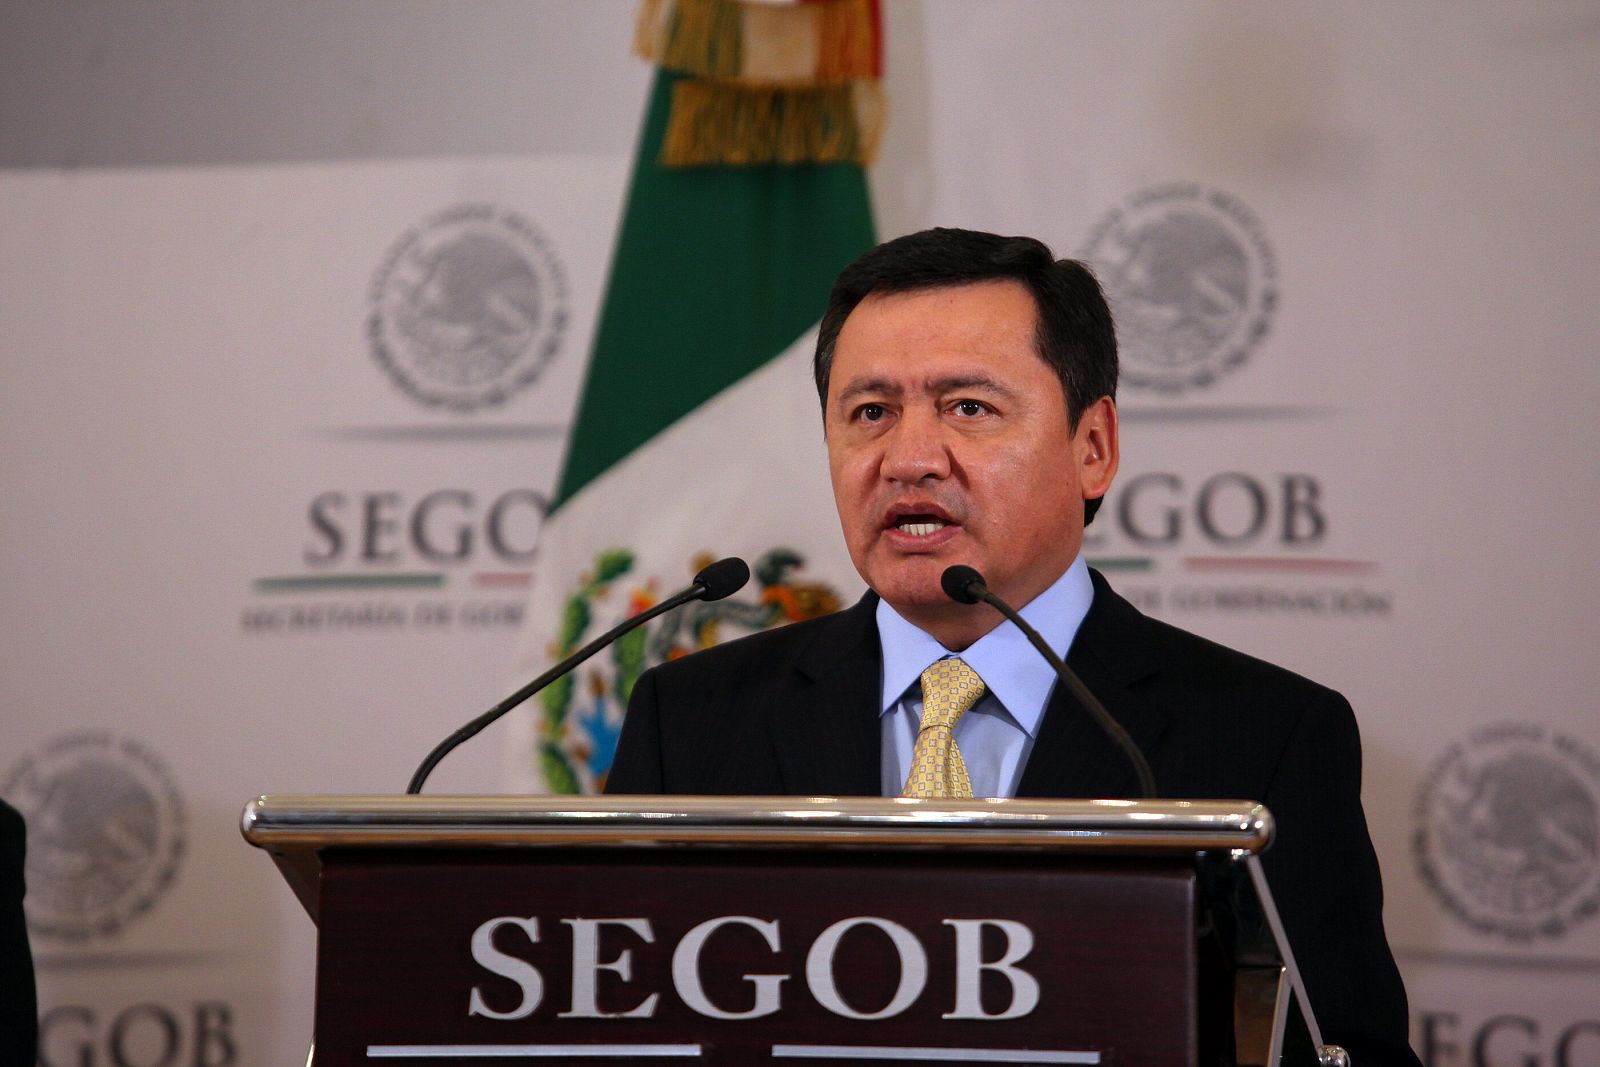 México iniciará una investigación "exhaustiva" del presunto espionaje de EE.UU.